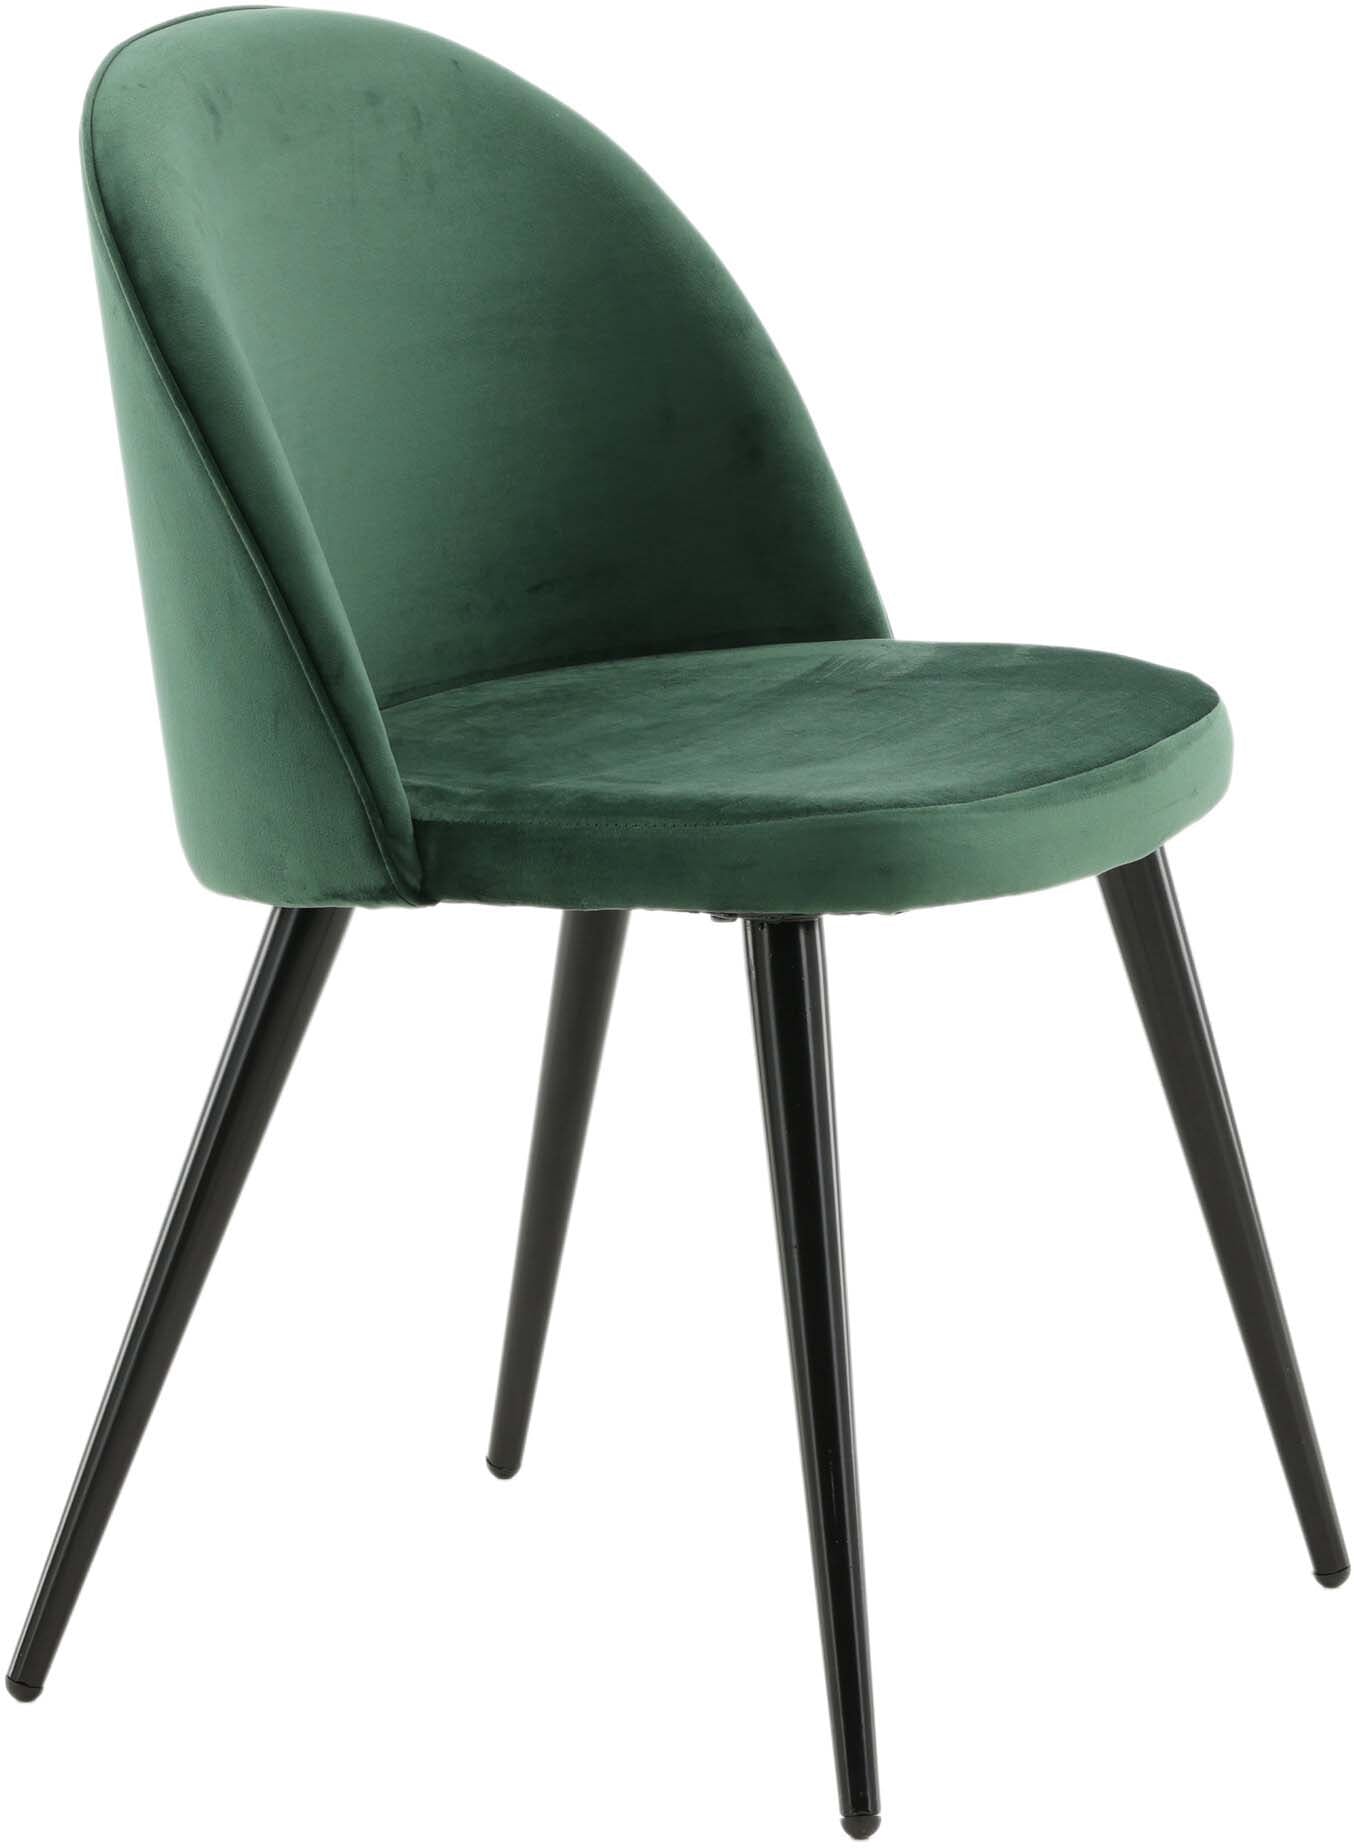 Velvet Matstol Stuhl in Grün / Schwarz präsentiert im Onlineshop von KAQTU Design AG. Schalenstuhl ist von Venture Home